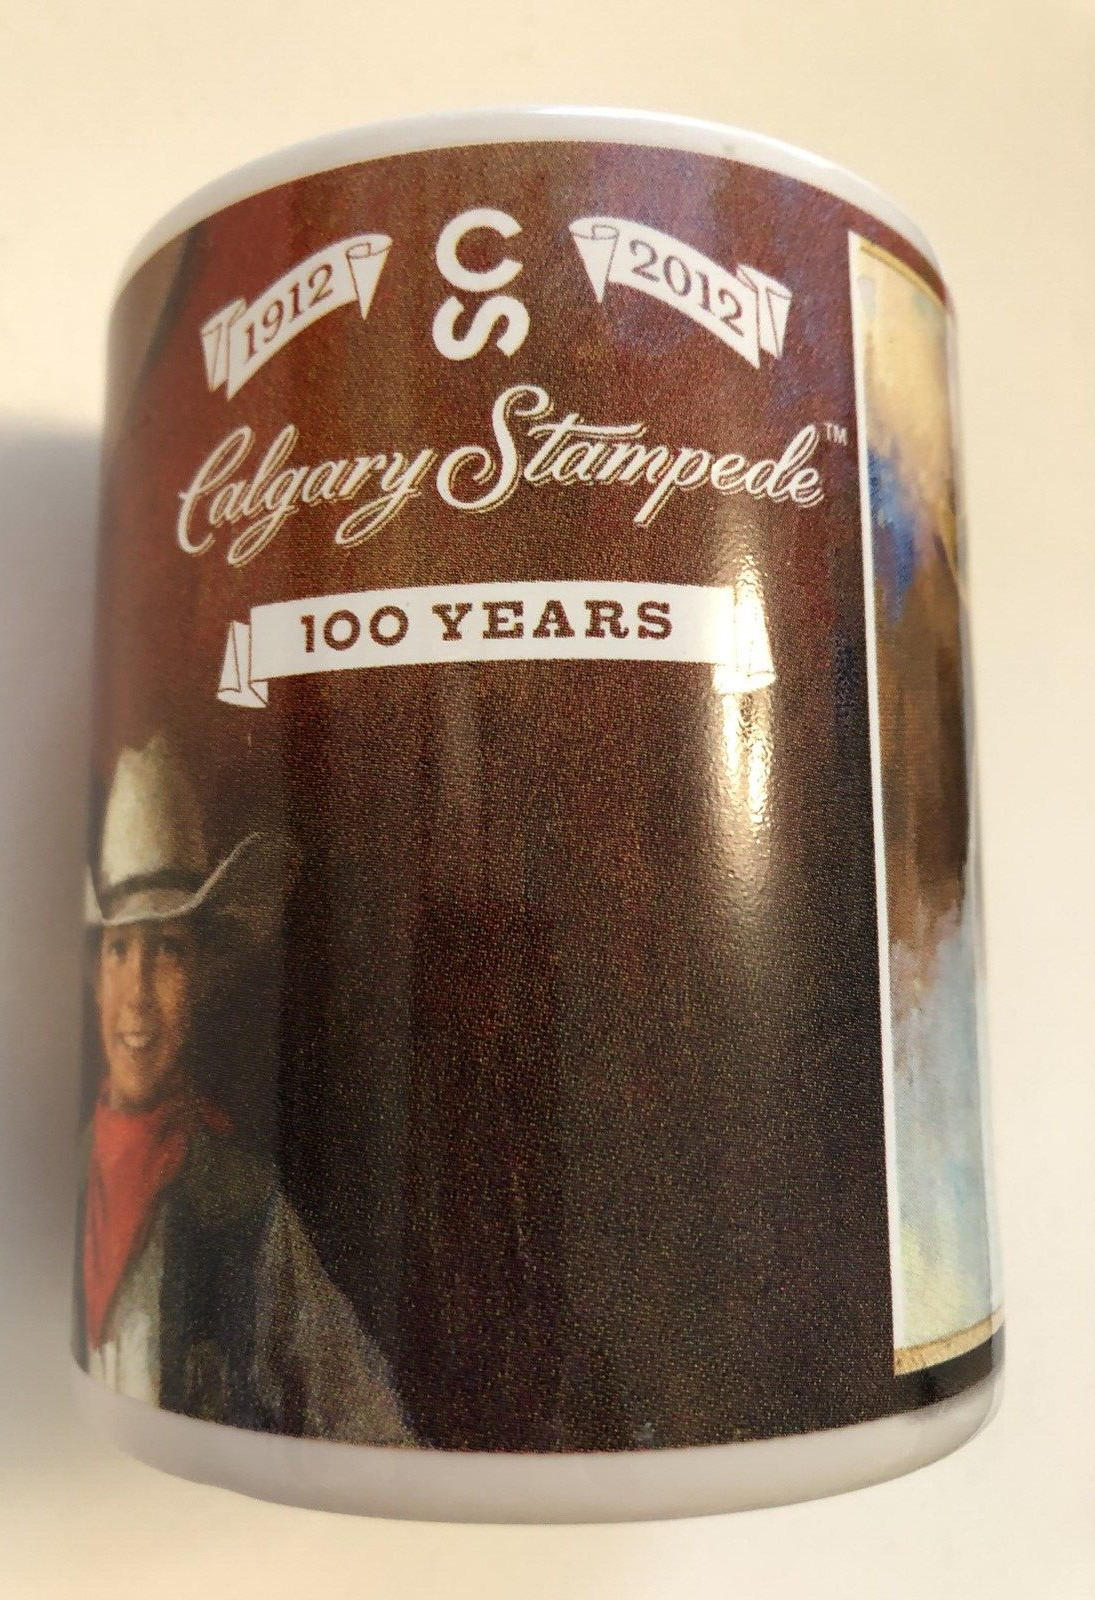 CALGARY STAMPEDE 1912 - 2012 100 Years Anniversary Canada Mug 4\